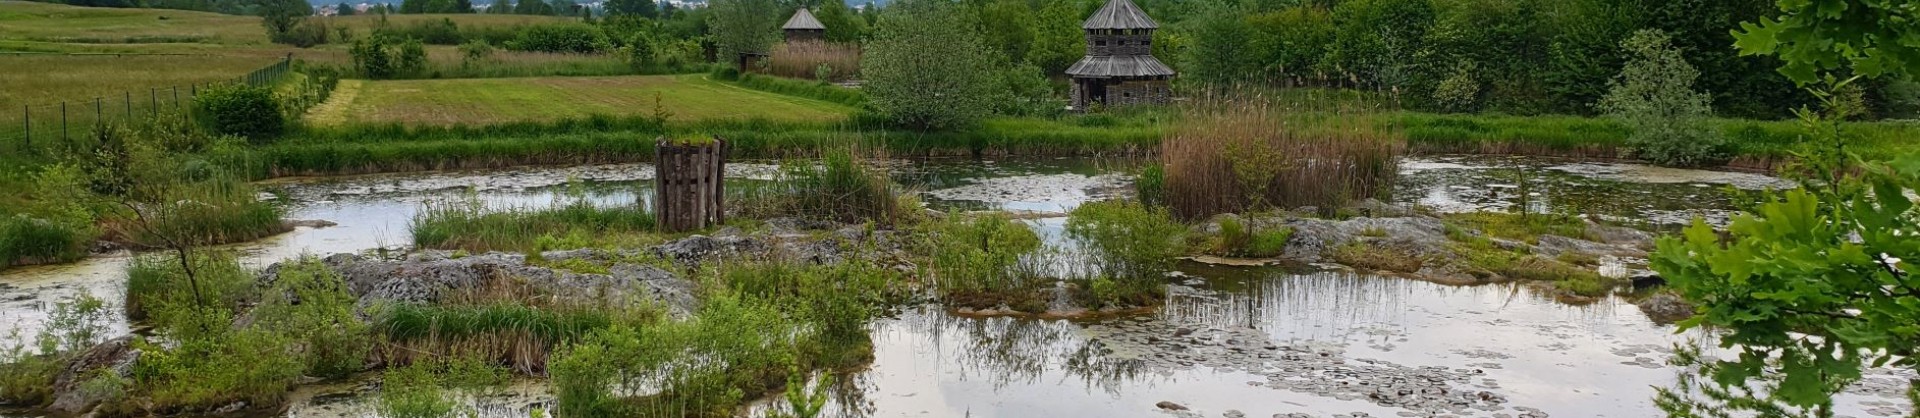 Vodomcev gaj visit grosuplje jezera slovenije slovenska jezera moja jezera manca korelc 3 sl